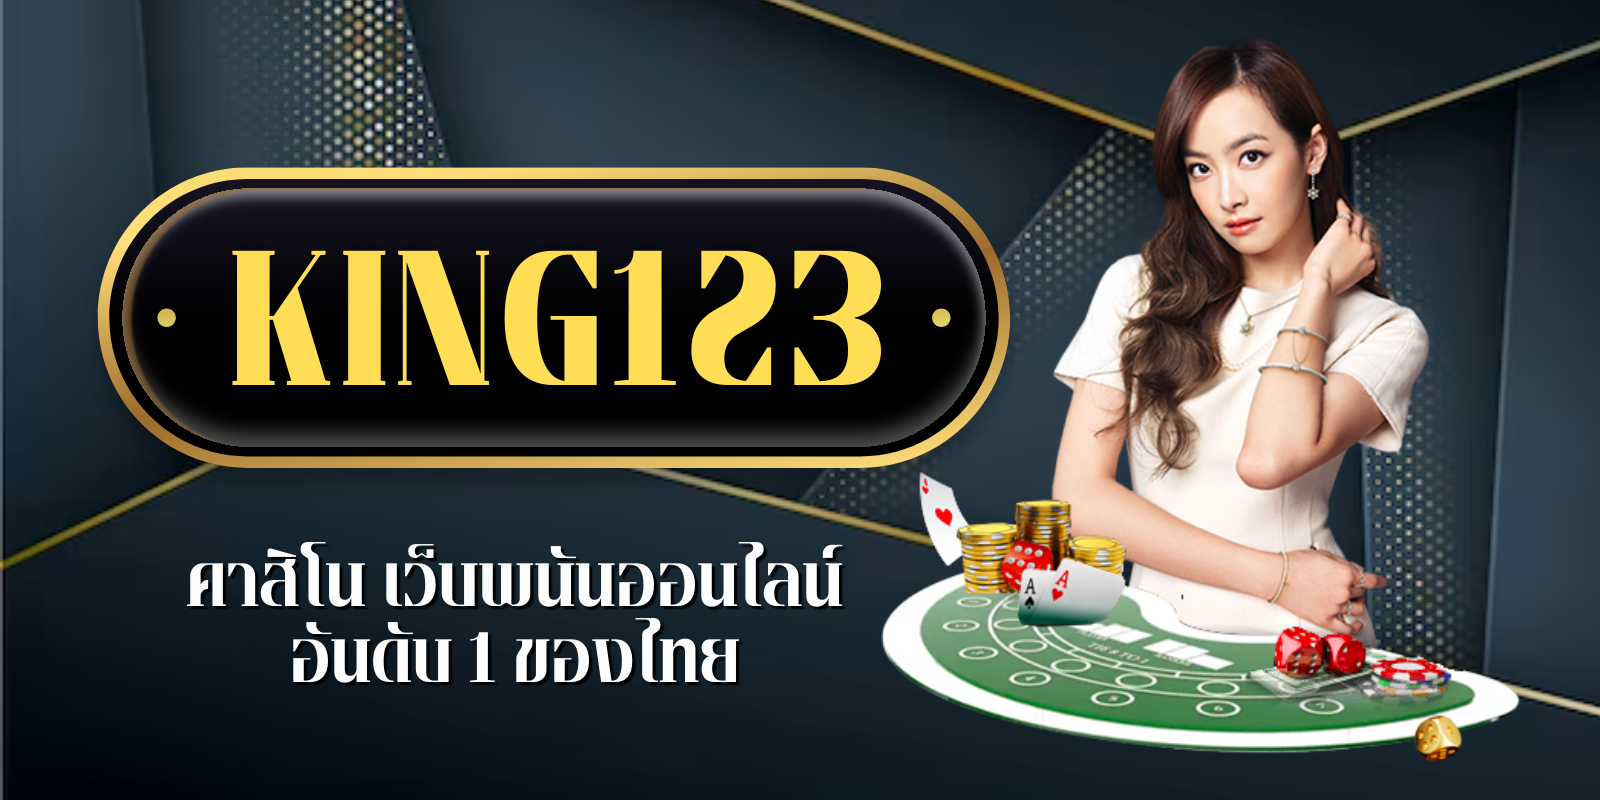 king123คาสิโน เว็บพนันออนไลน์อันดับ1ของไทย